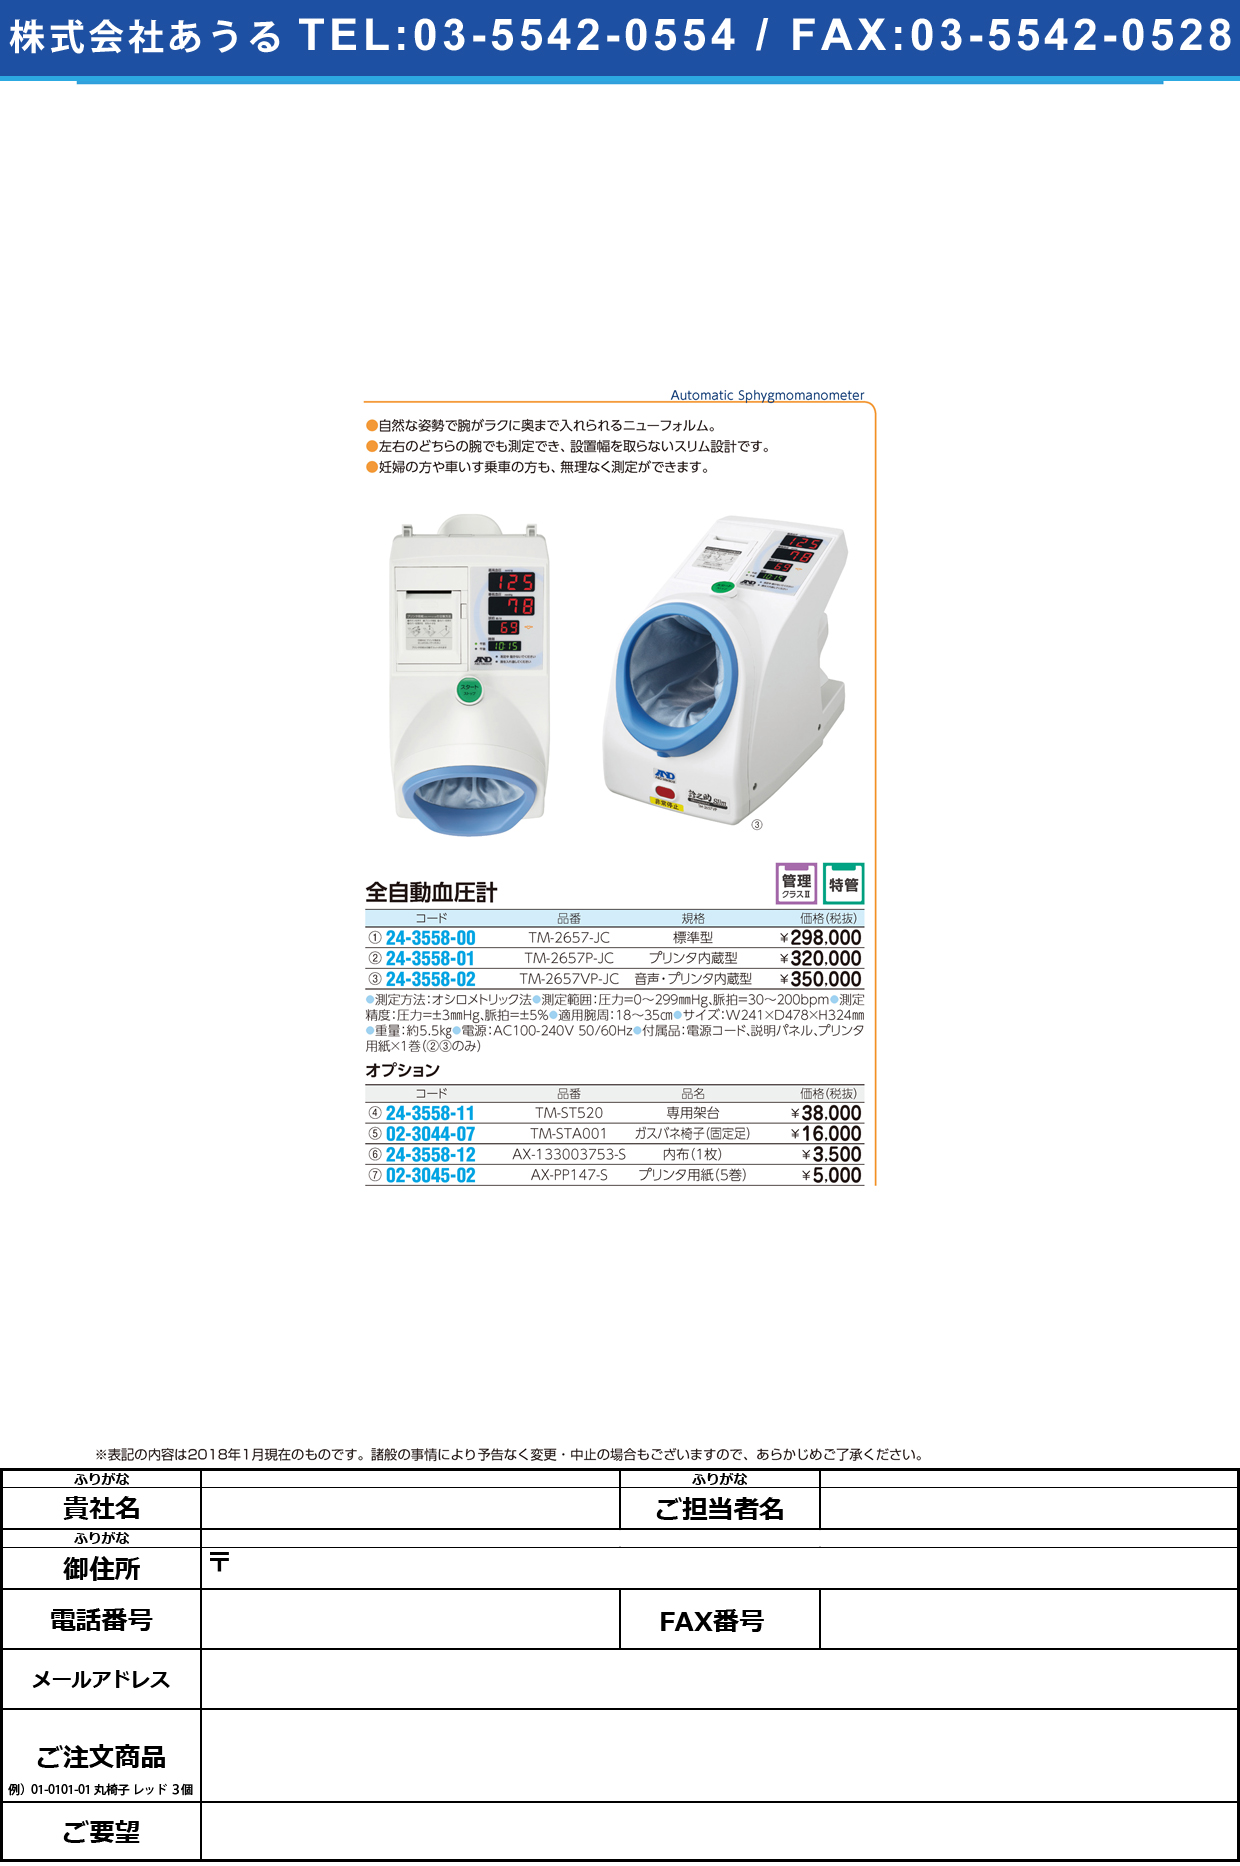 (24-3558-02)全自動血圧計（音声・プリンタ内蔵型） TM-2657VP-JC ｾﾞﾝｼﾞﾄﾞｳｹﾂｱﾂｹｲｵﾝｾｲﾌﾟ(エー・アンド・デイ)【1台単位】【2018年カタログ商品】